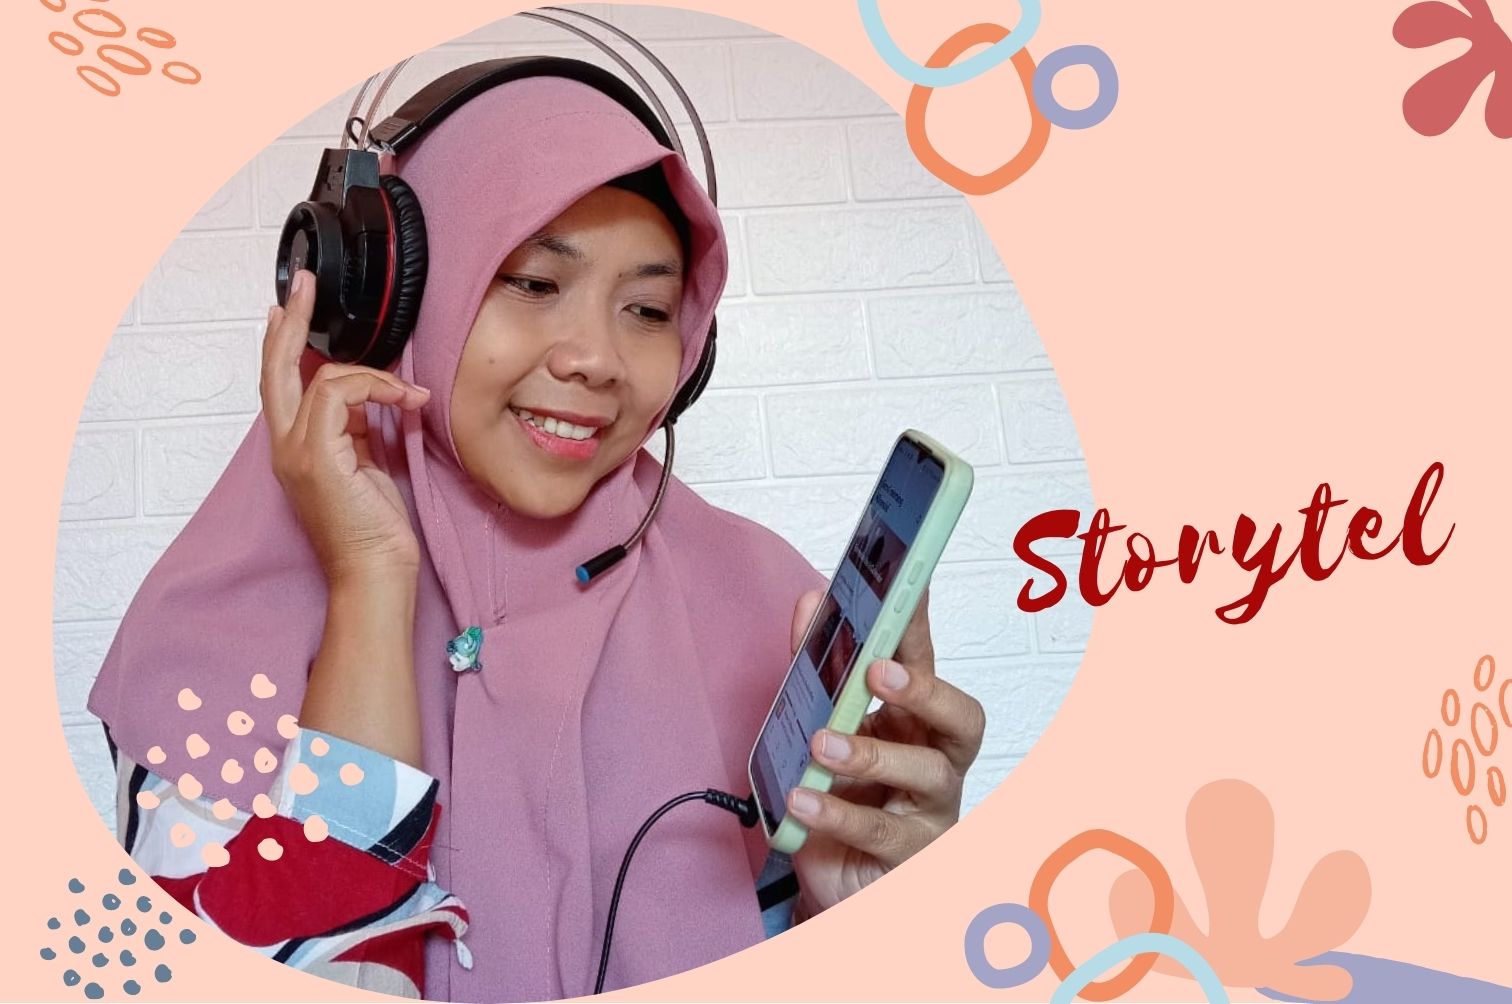 Storytel Indonesia